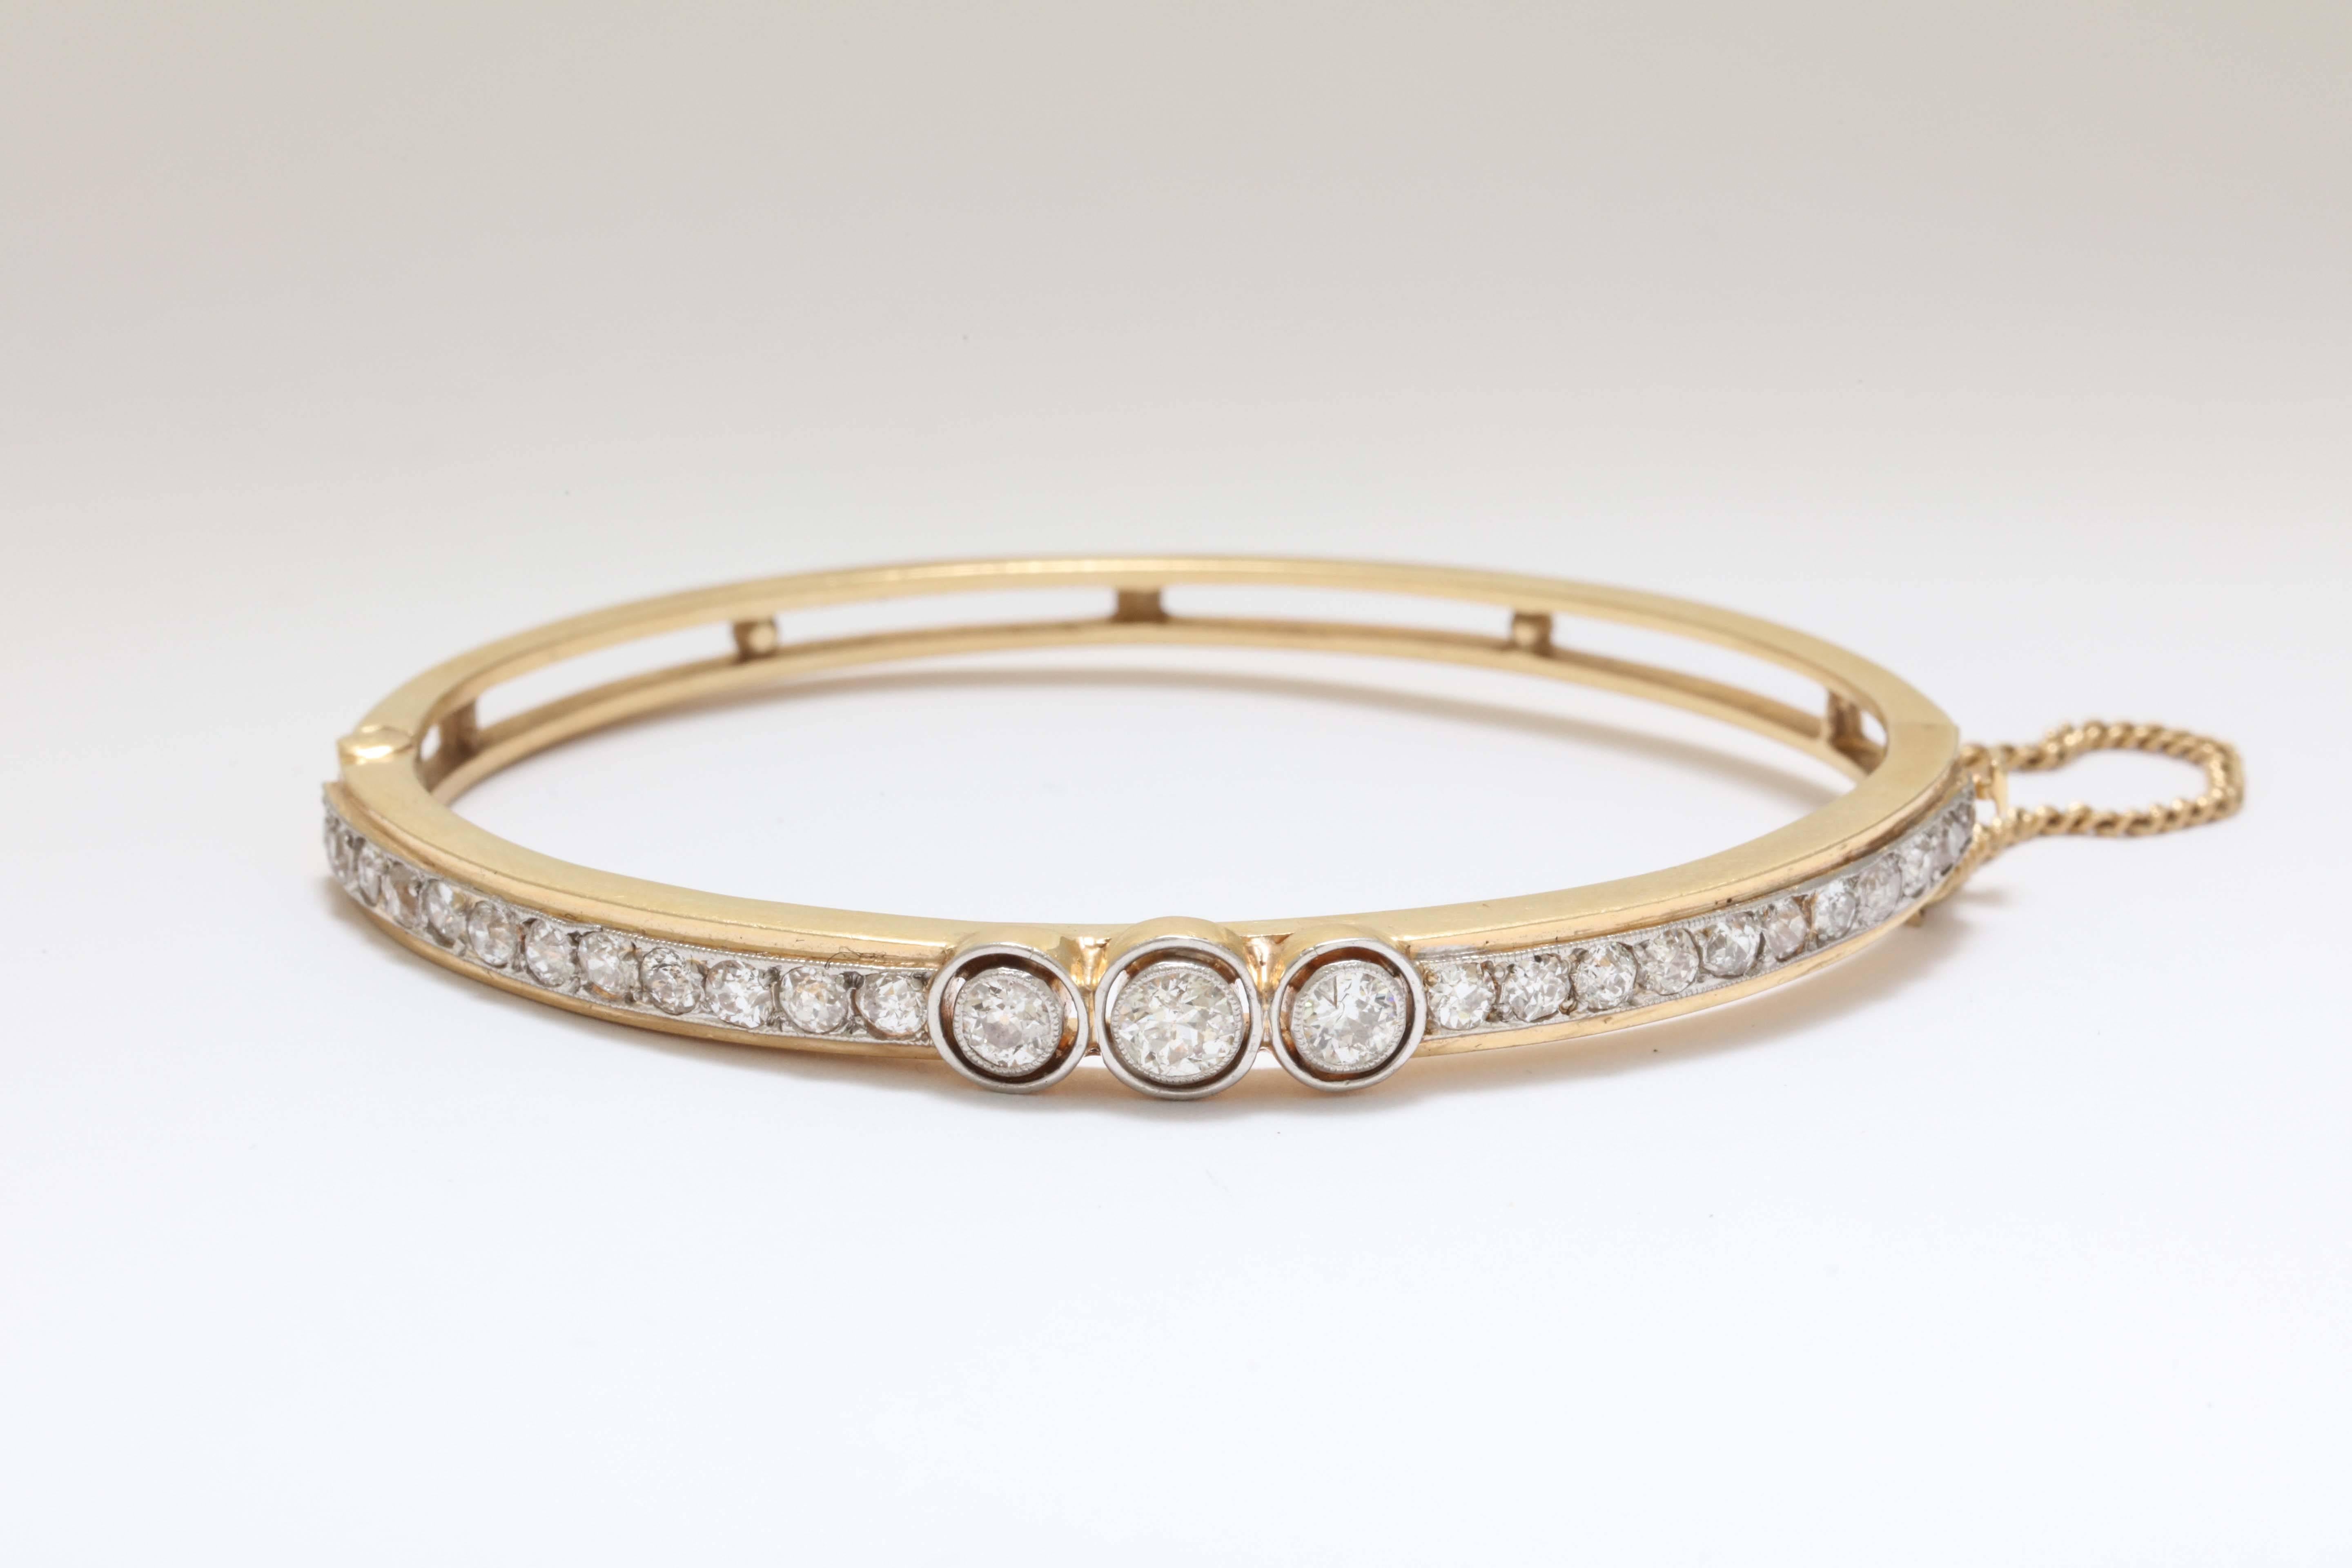 A elegant 14-karat gold oval bangle bracelet with European bezel set diamonds.